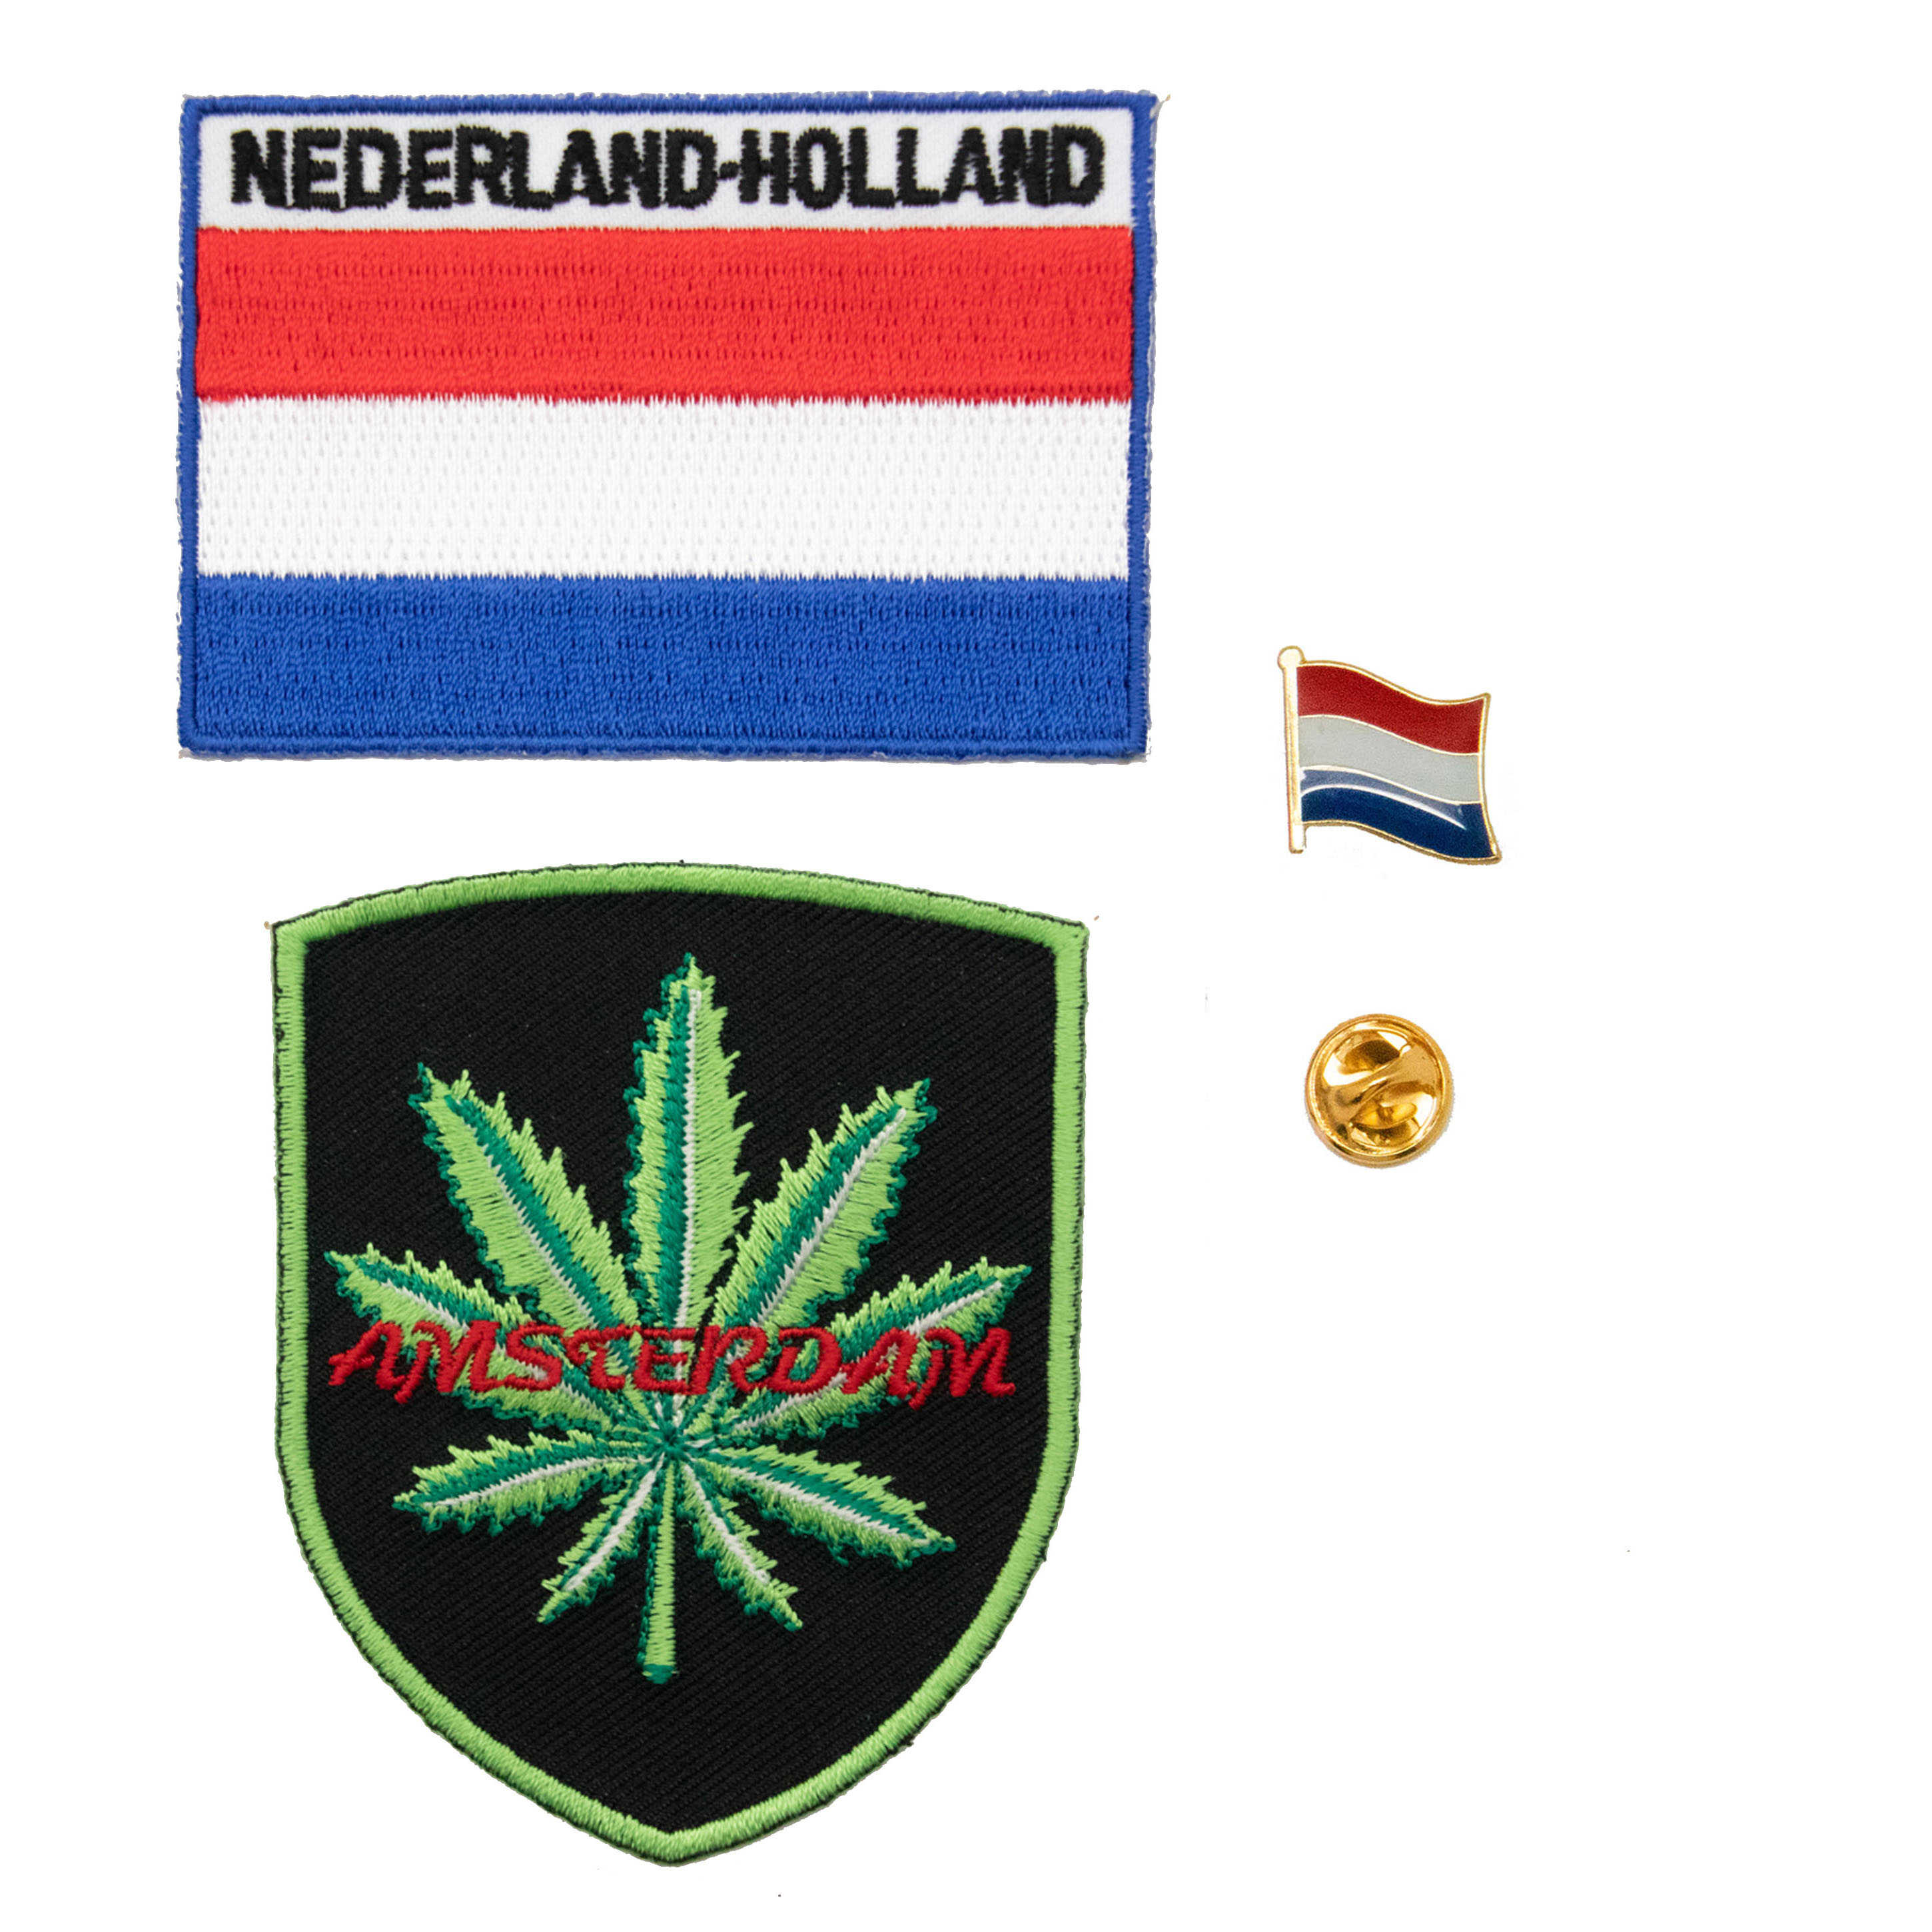 立體繡貼 三件組阿姆斯特丹大麻＋荷蘭國旗刺繡+國旗金屬別針 DIY胸臂章刺繡燙布貼